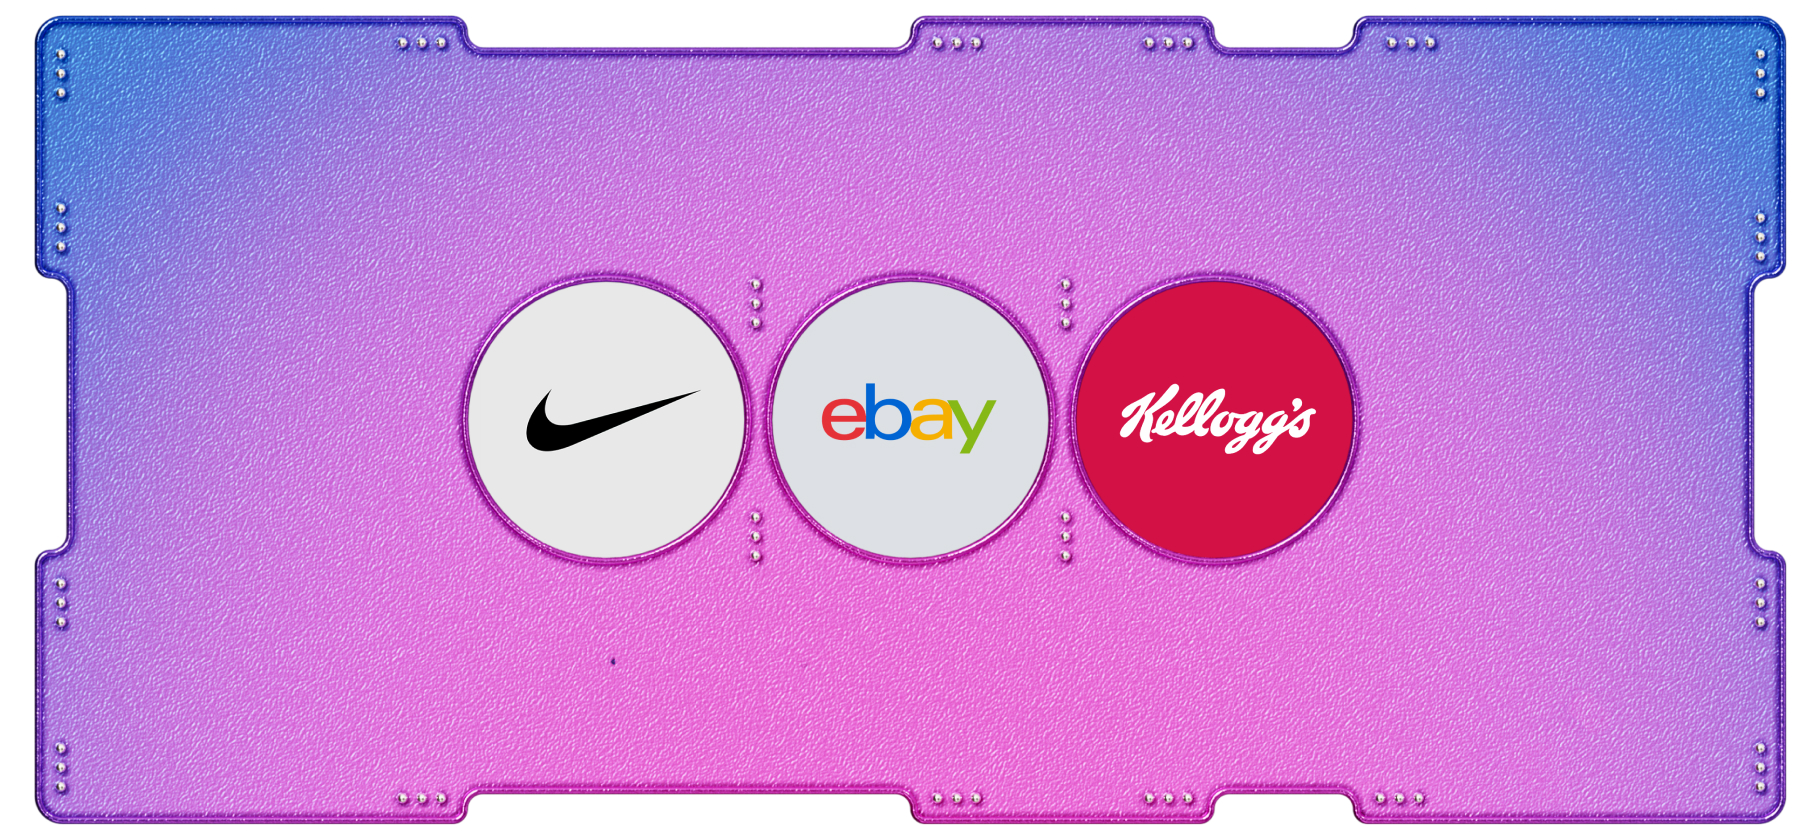 Календарь инвестора: Nike, eBay и Kellogg заплатят дивиденды